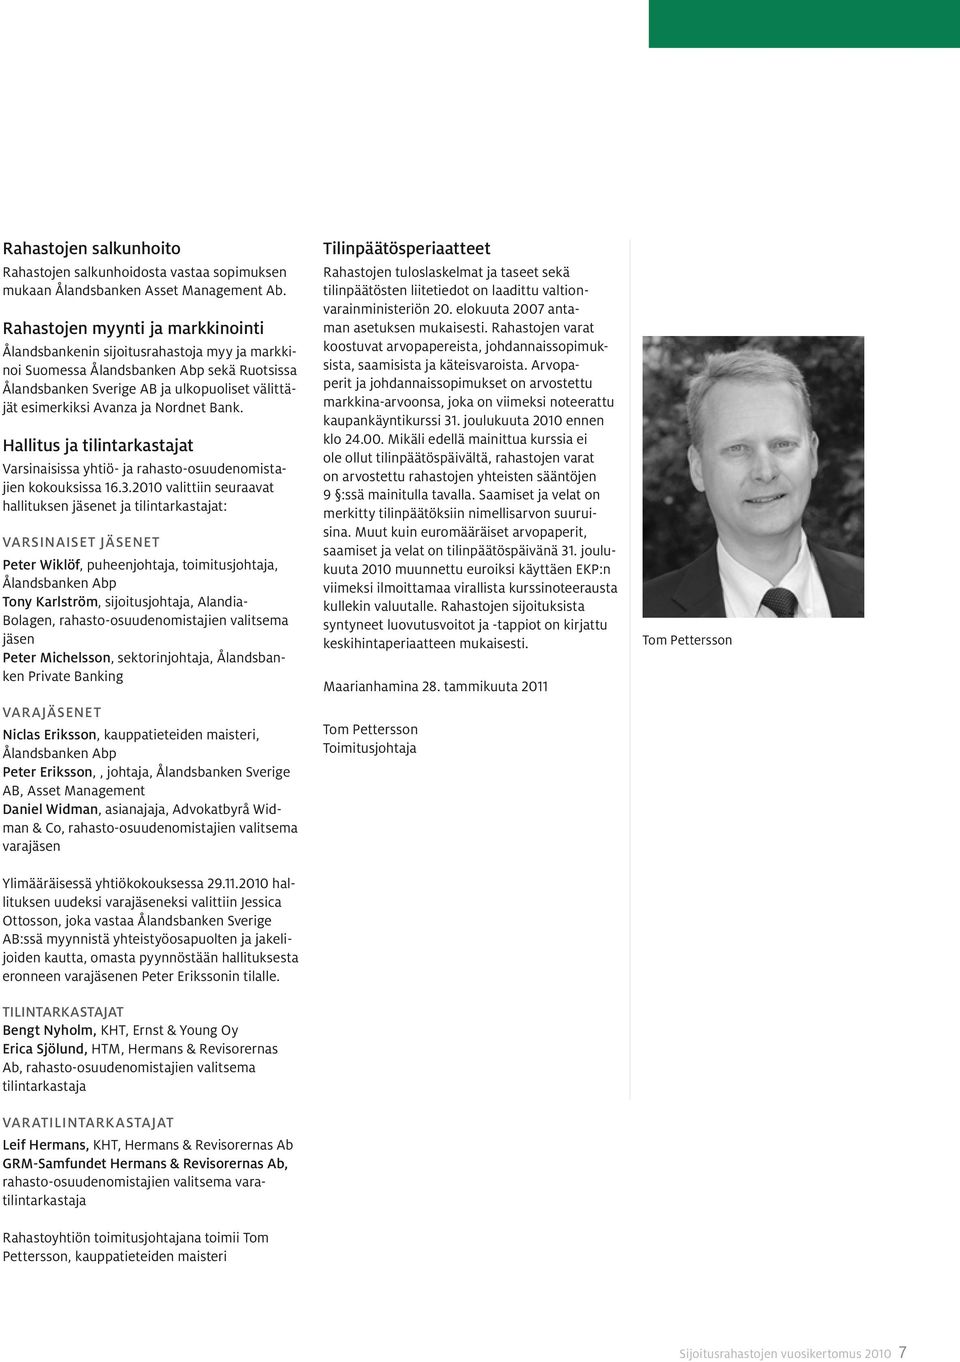 Nordnet Bank. Hallitus ja tilintarkastajat Varsinaisissa yhtiö- ja rahasto-osuudenomistajien kokouksissa 16.3.